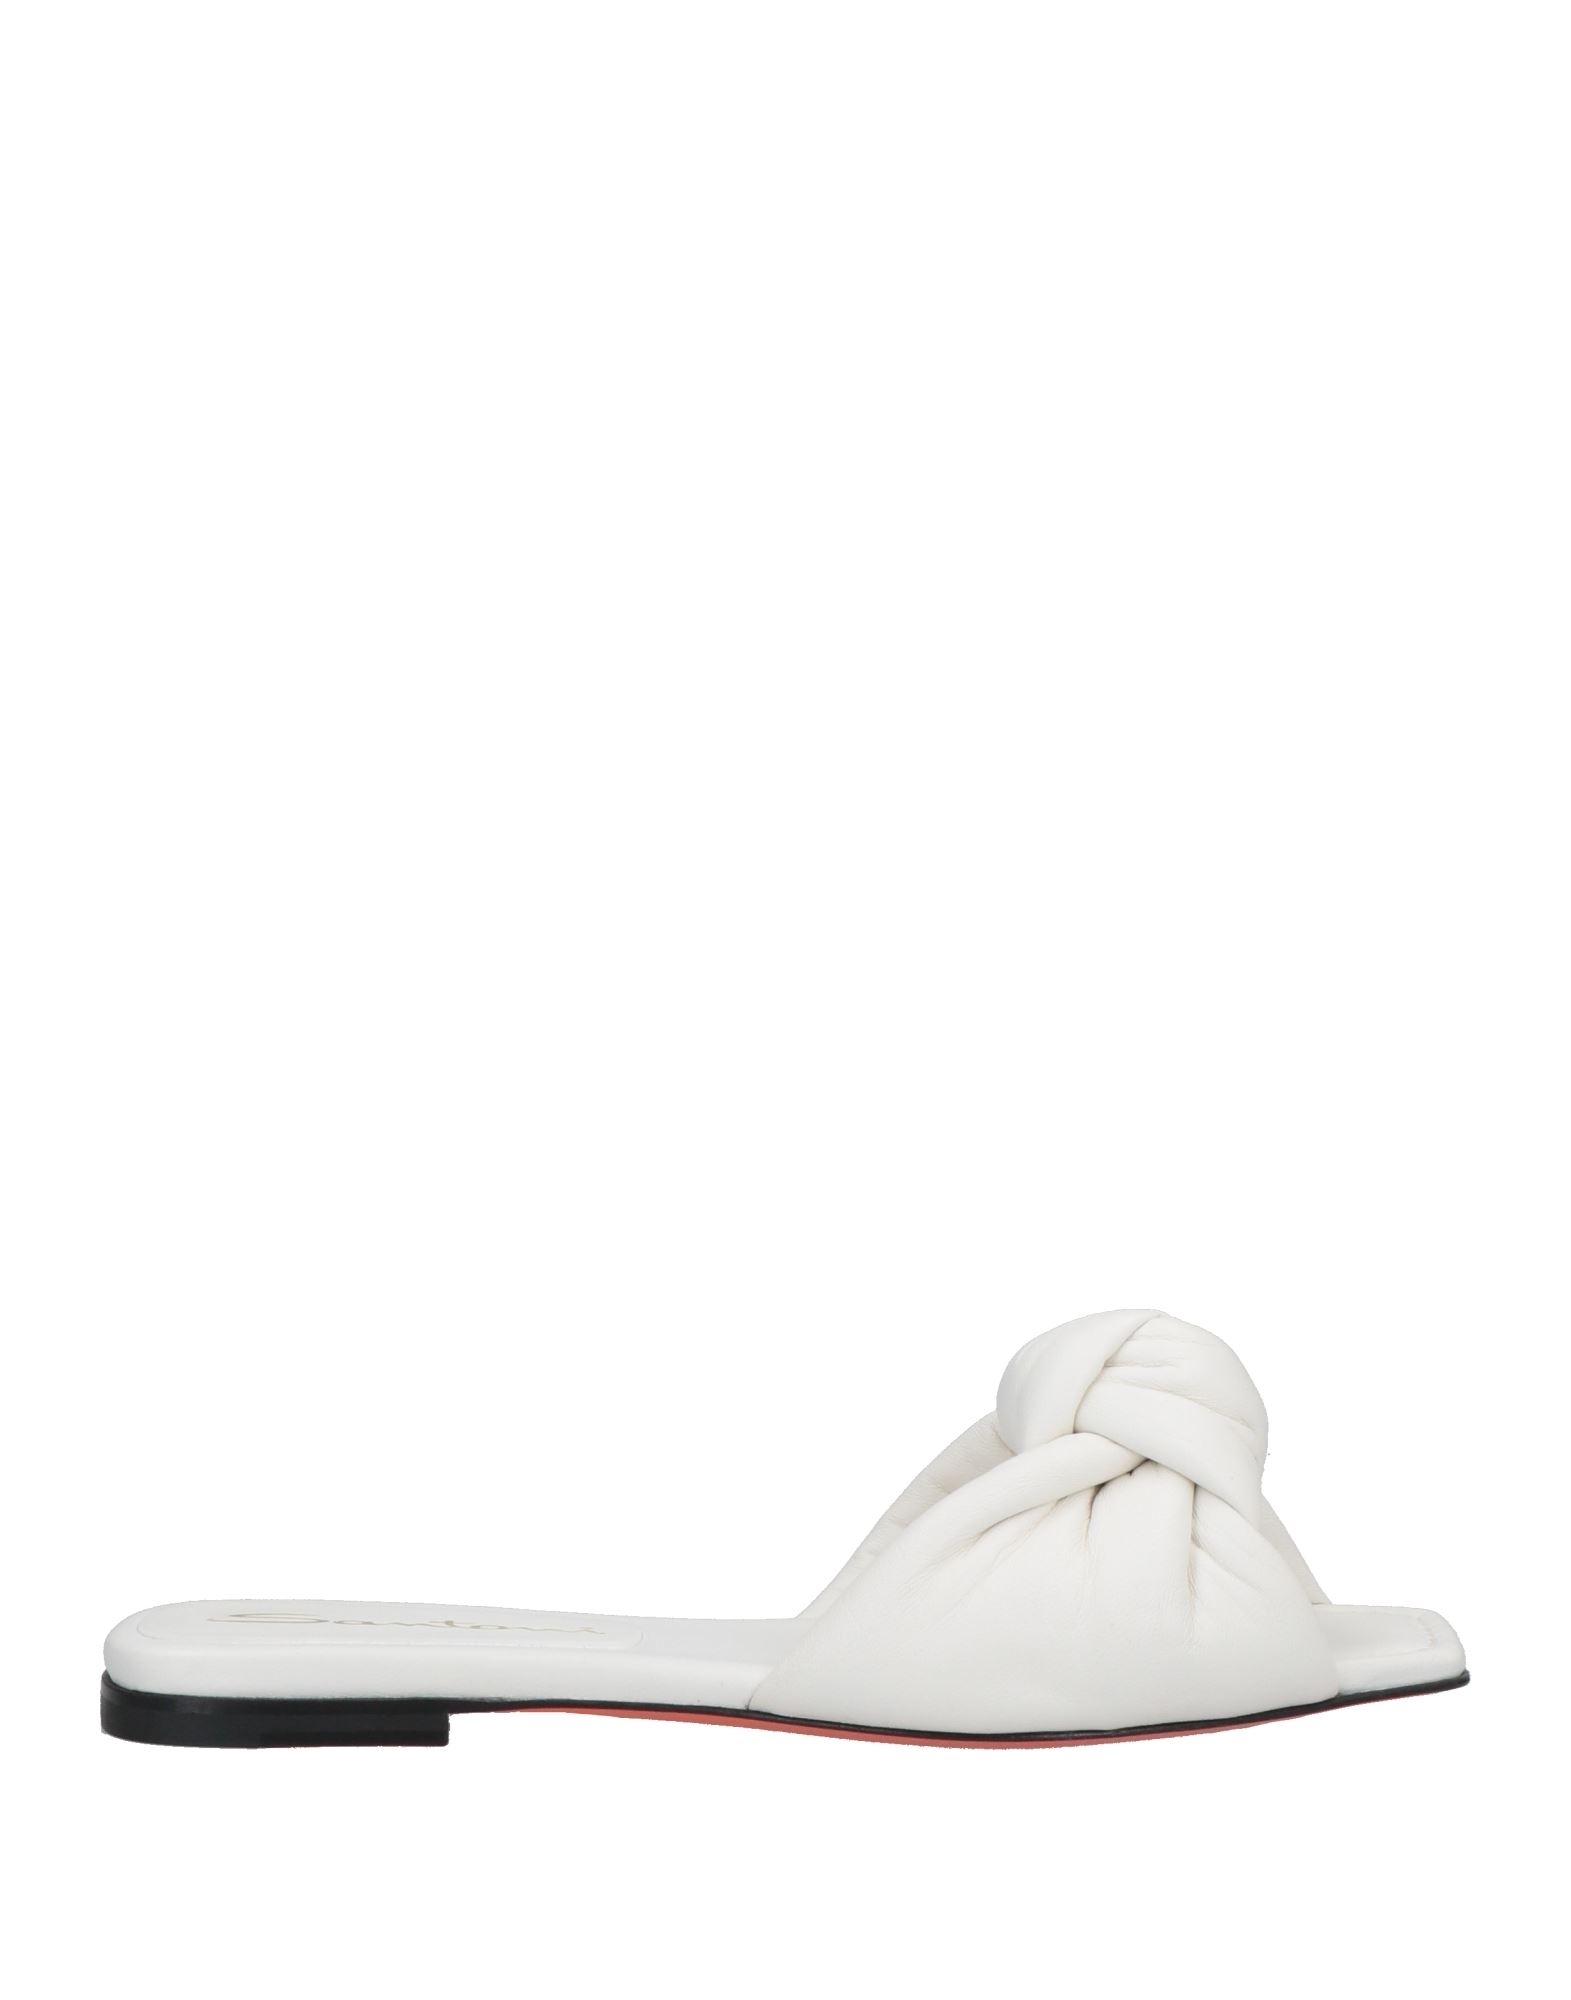 Shop Santoni Woman Sandals White Size 7.5 Soft Leather